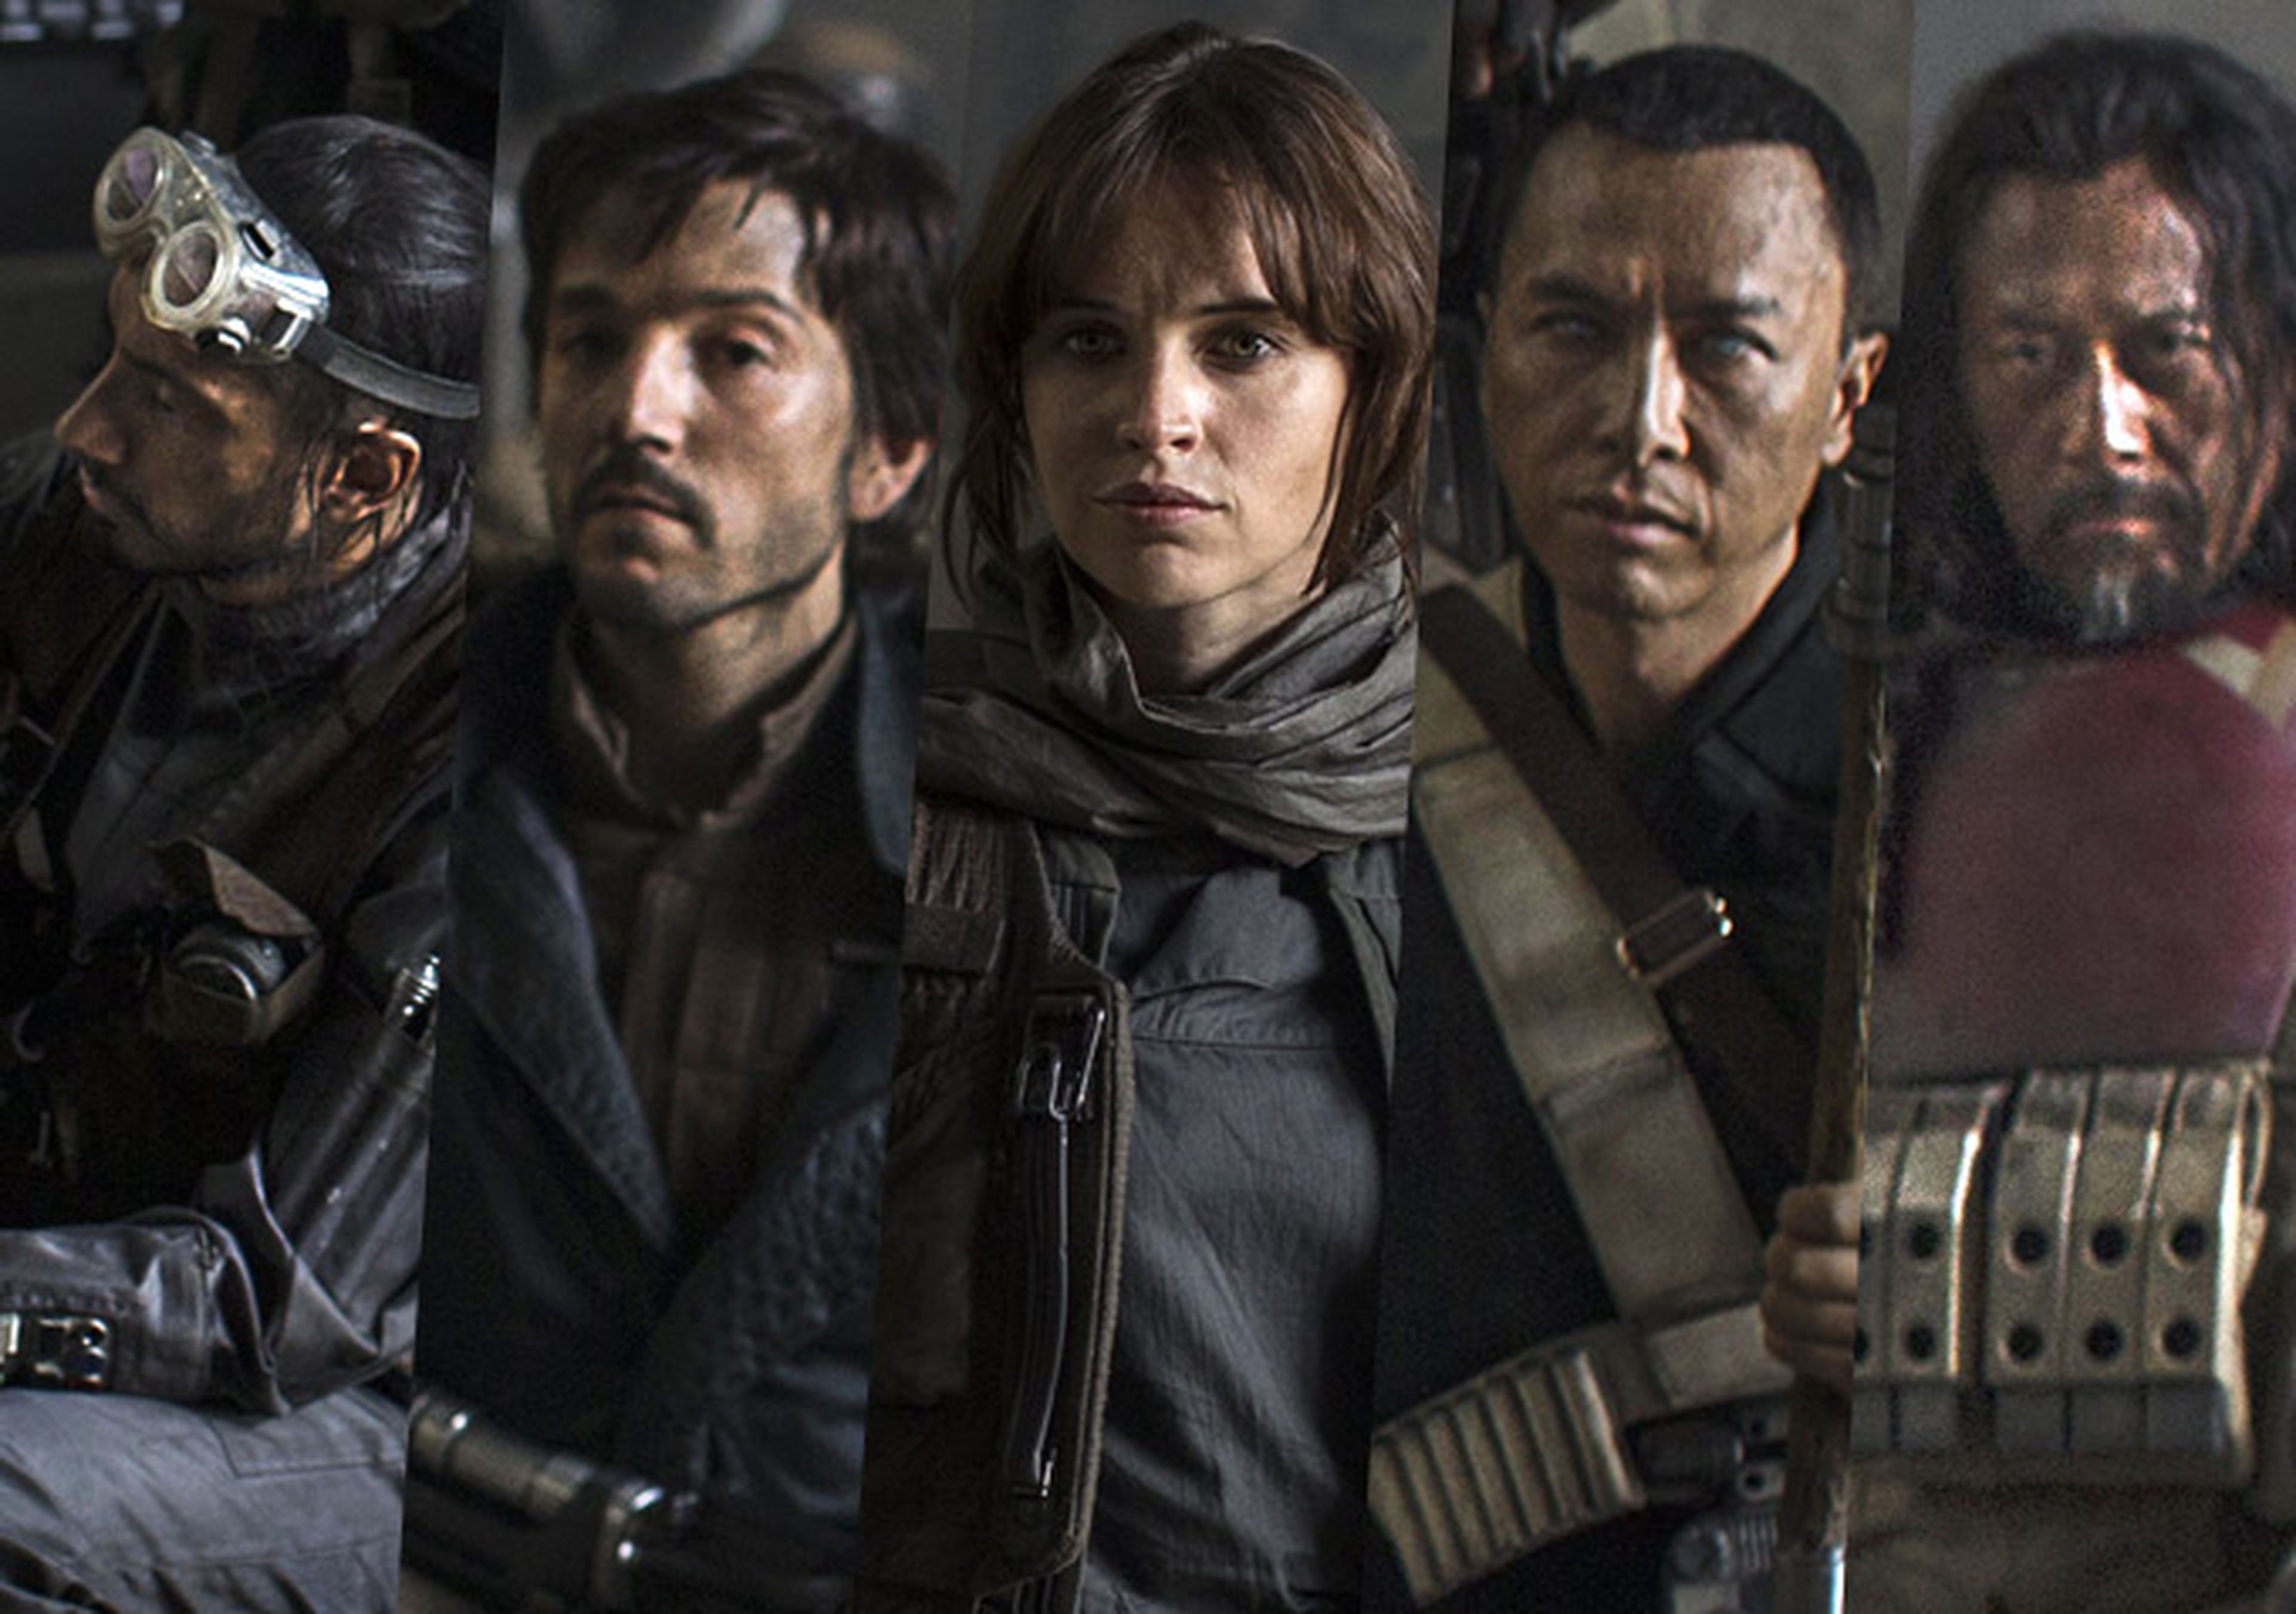 Star Wars: Rogue One podria conectar con la tercera temporada de Star Wars Rebels